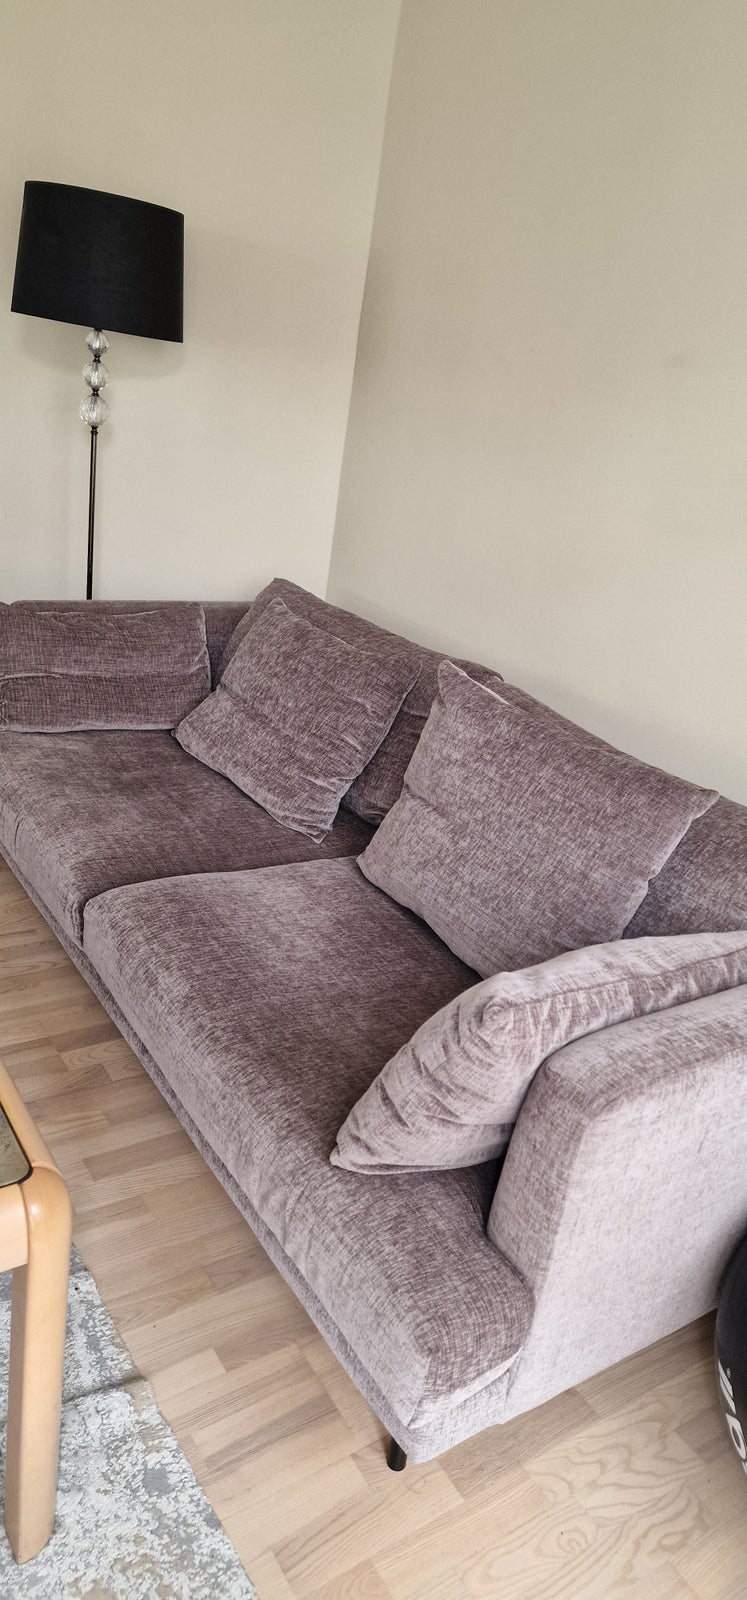 Sofa, anden størrelse